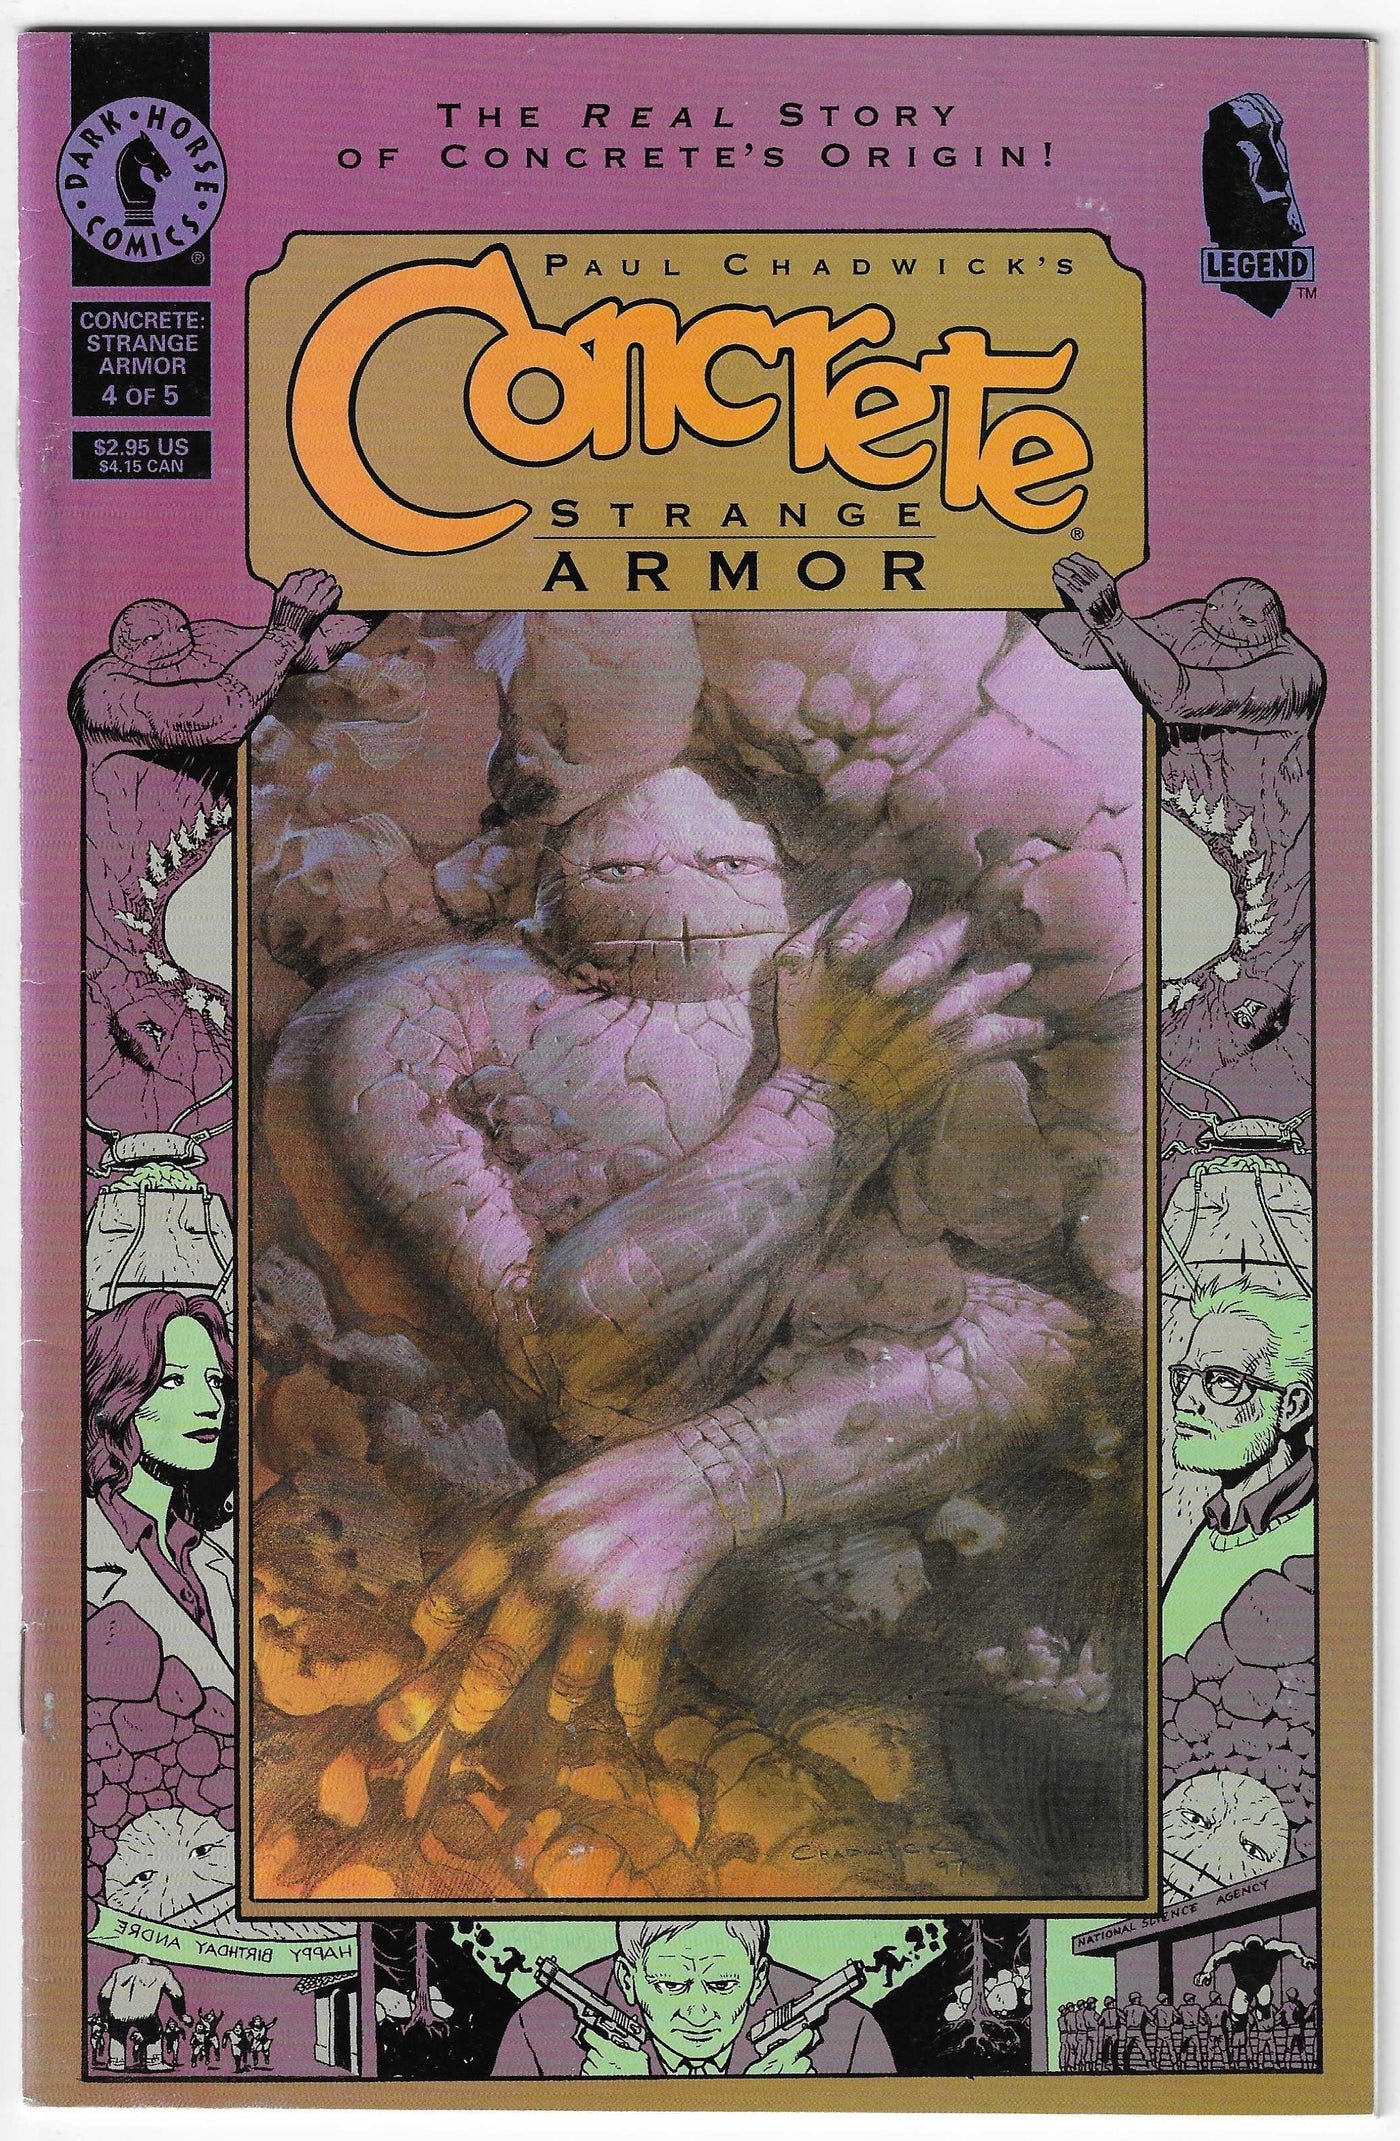 Concrete: Strand Armor (#4 of 5)